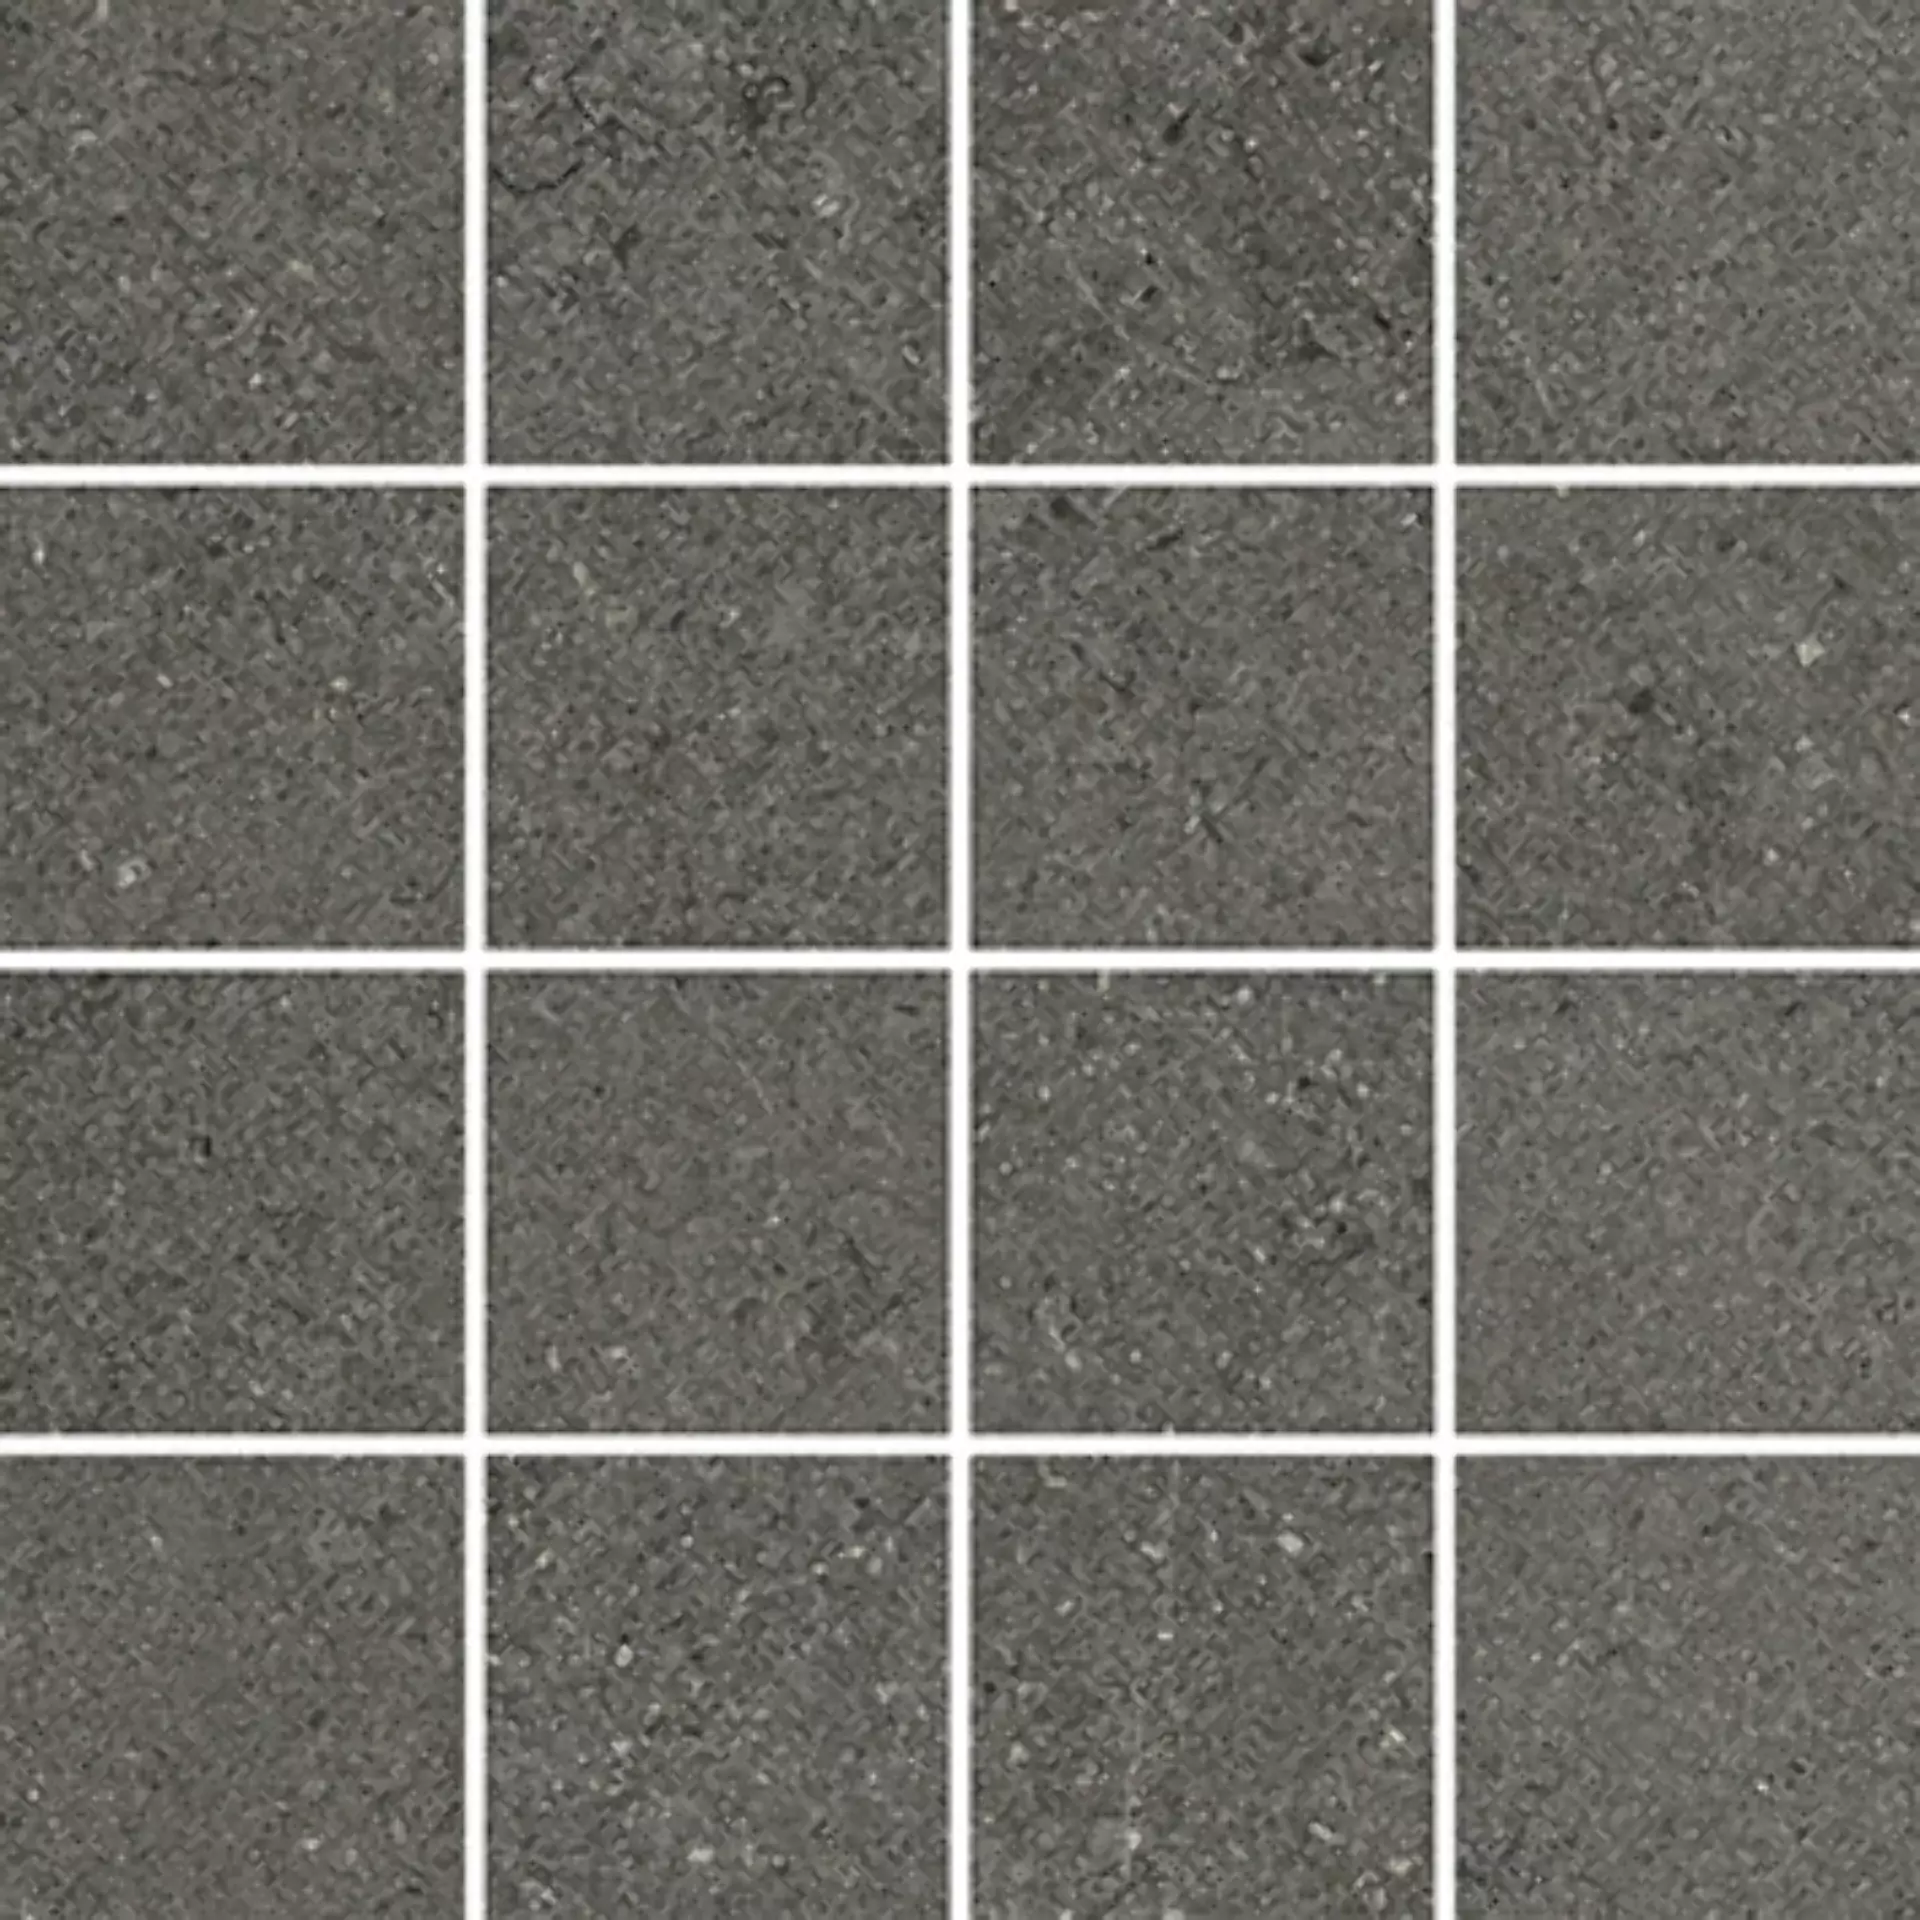 Wandfliese,Bodenfliese Villeroy & Boch Lucca Rock Matt Rock 2013-LS90 matt 7,5x7,5cm Mosaik (7,5x7,5) rektifiziert 9mm